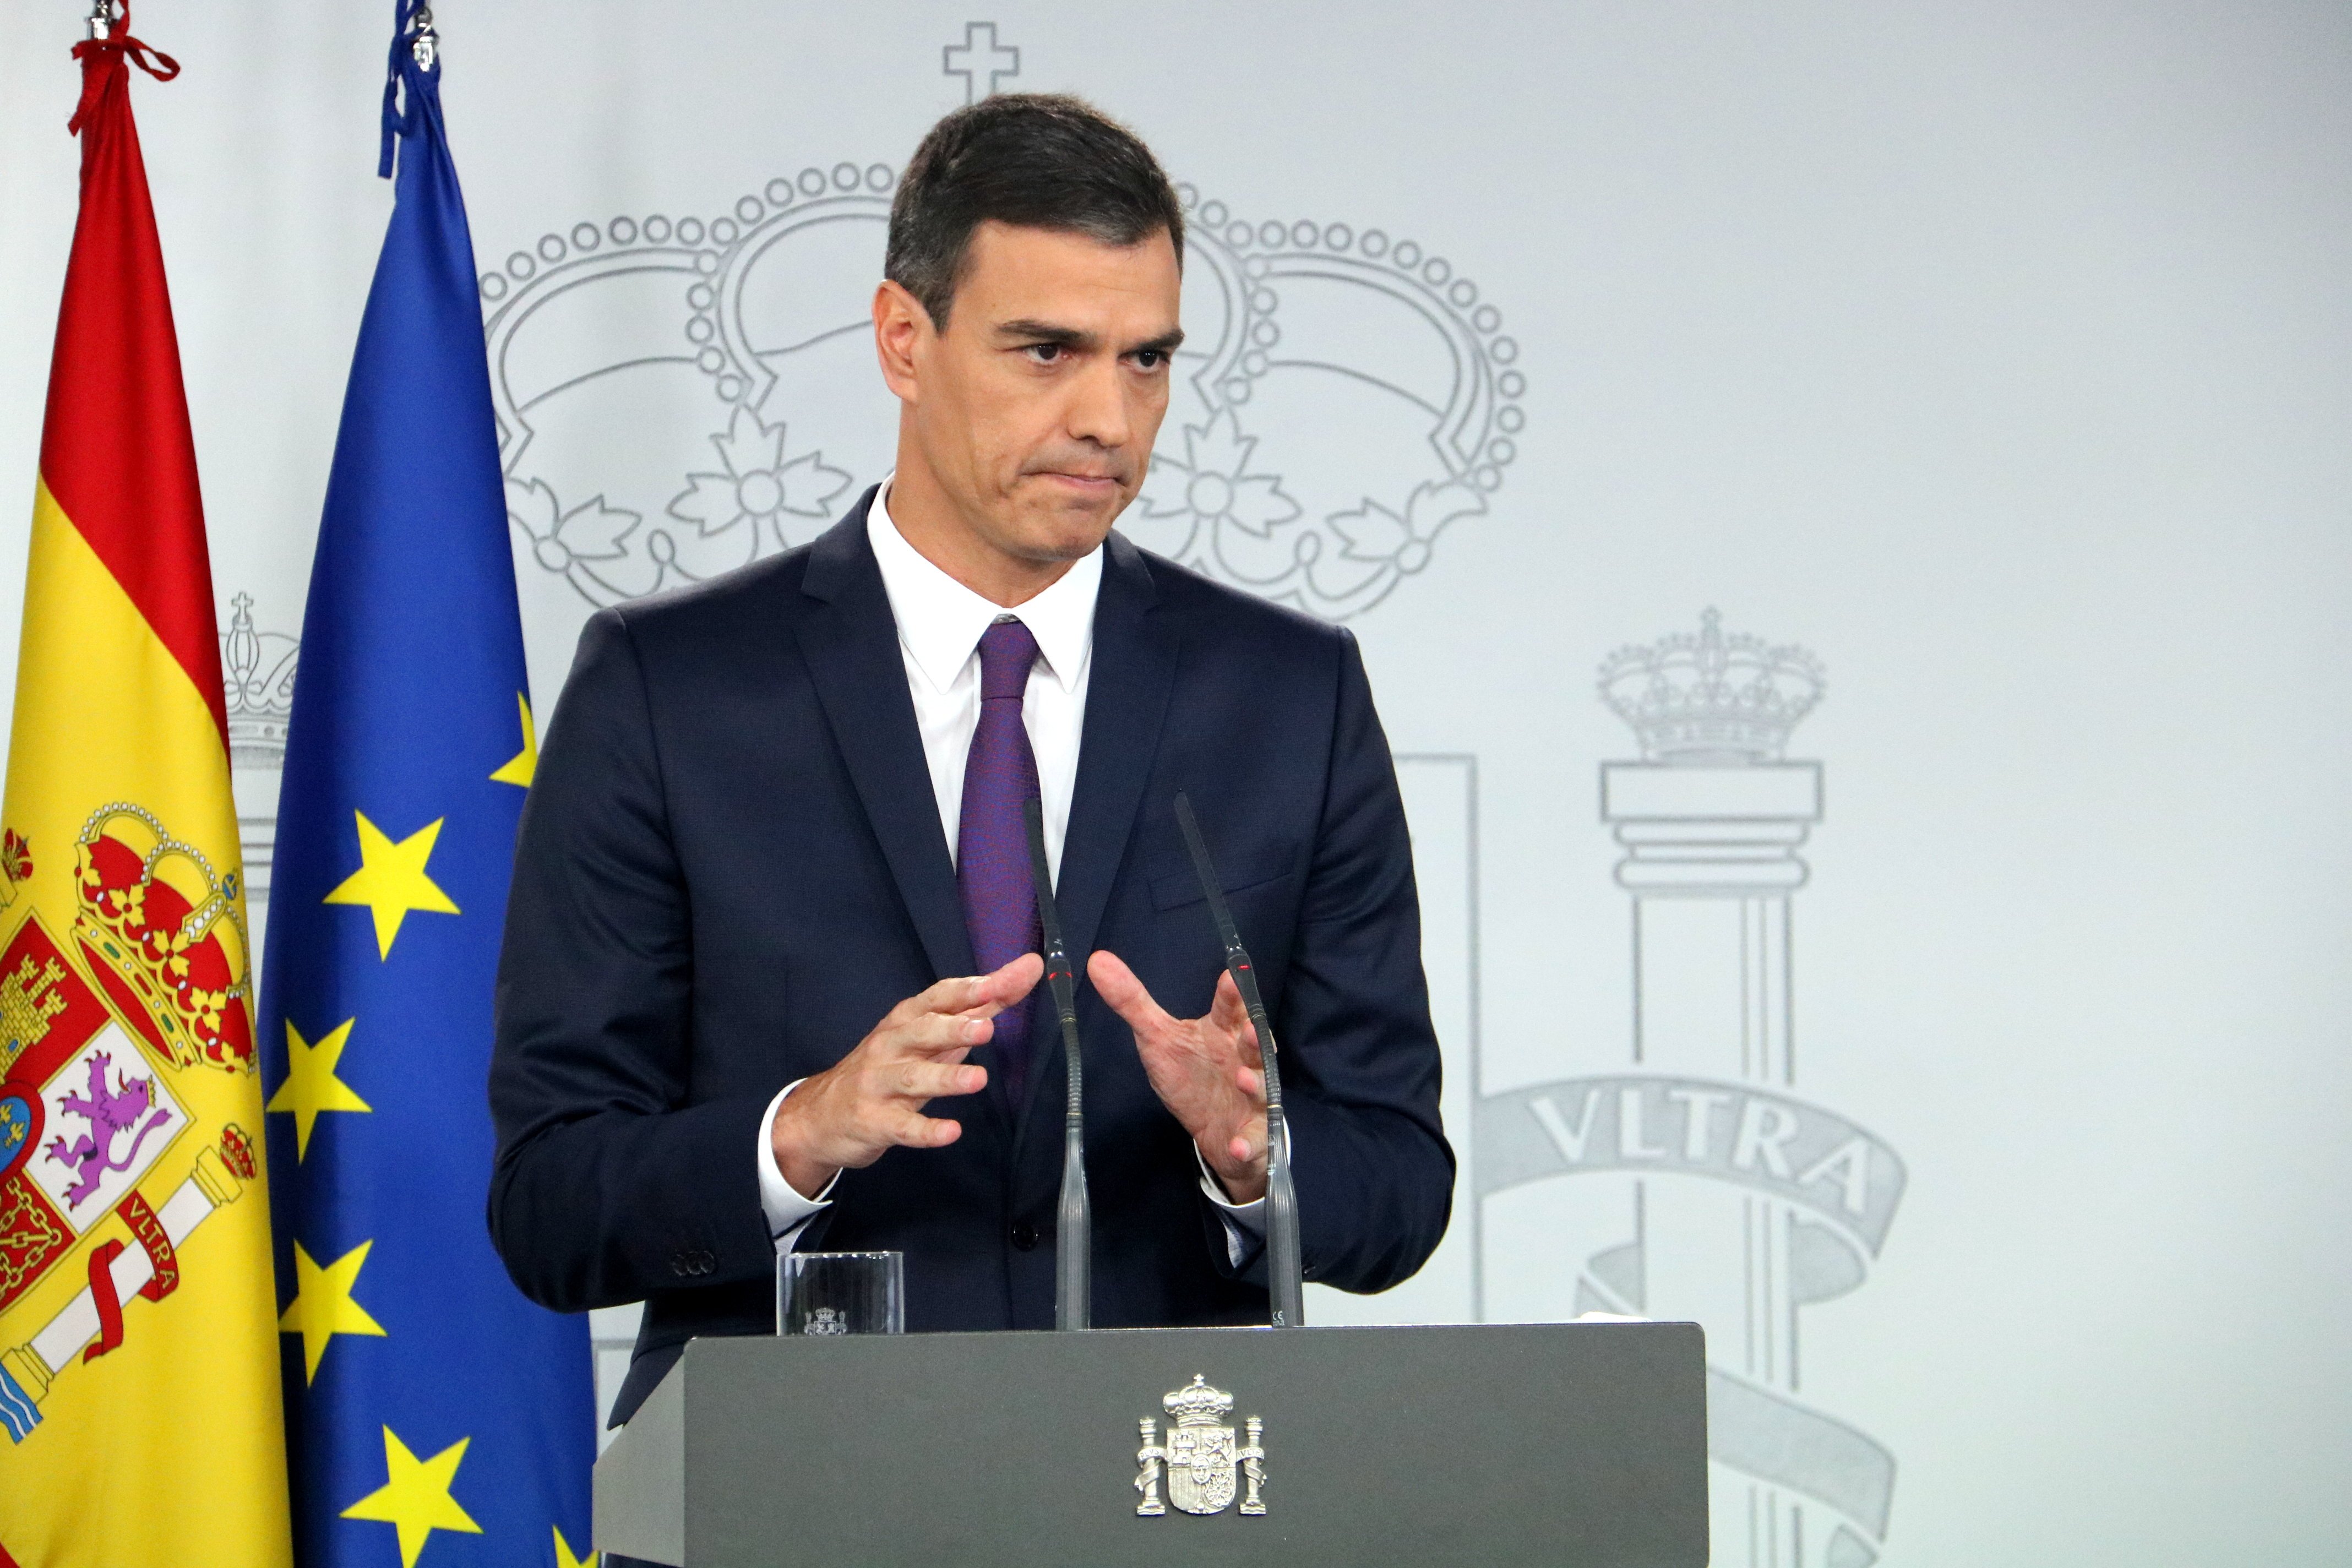 Brussel·les ja ha rebut el pla de recuperació espanyol